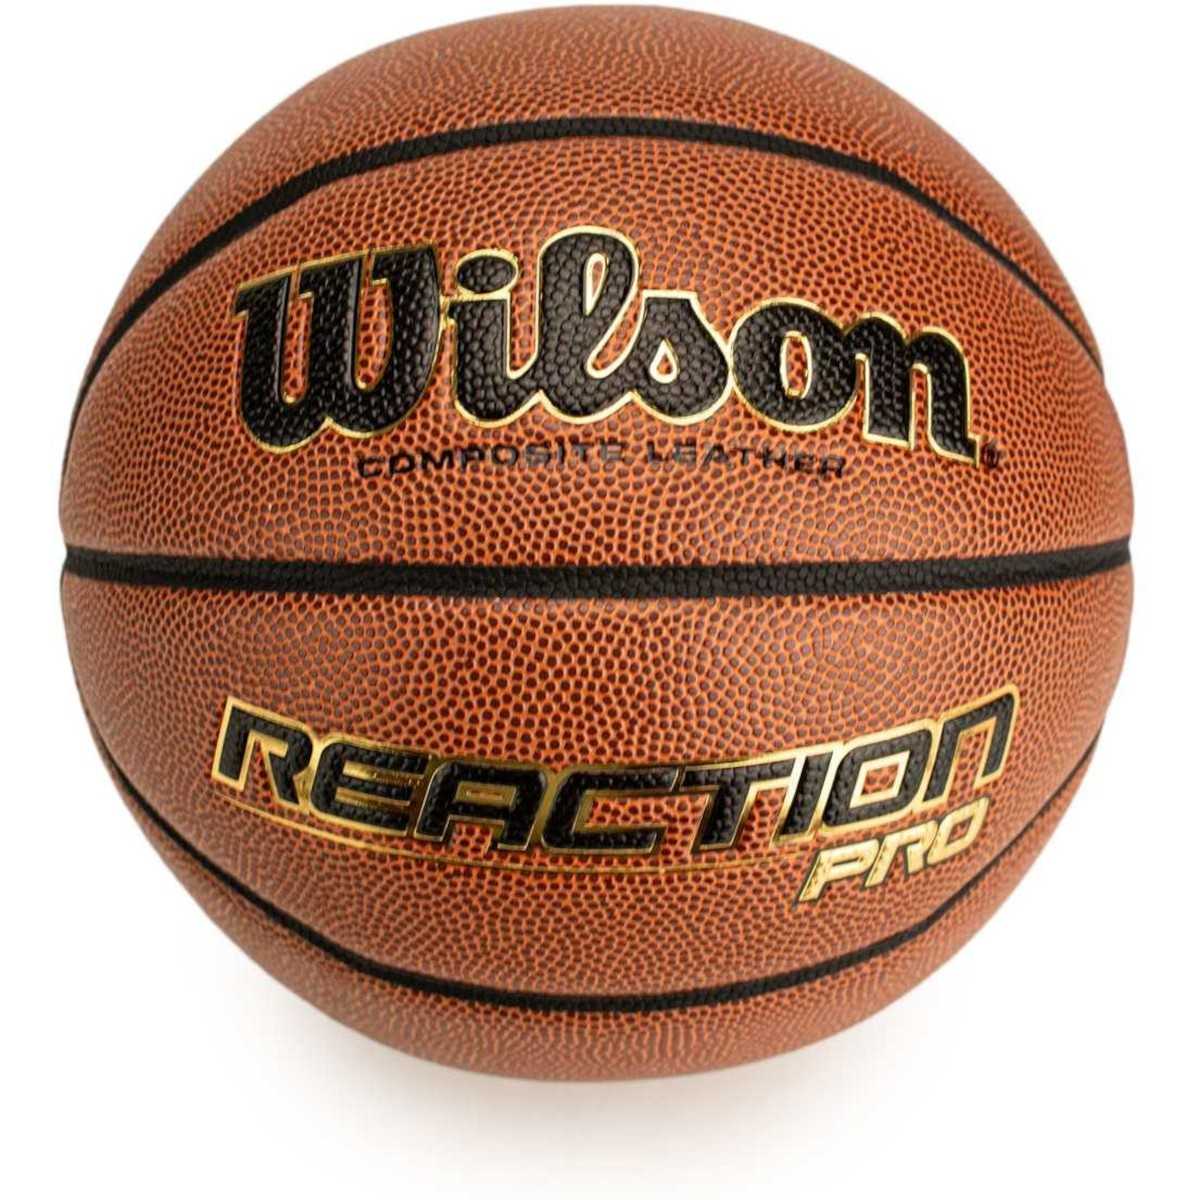 Wilson Reaction Pro krepšinio kamuolys, 7